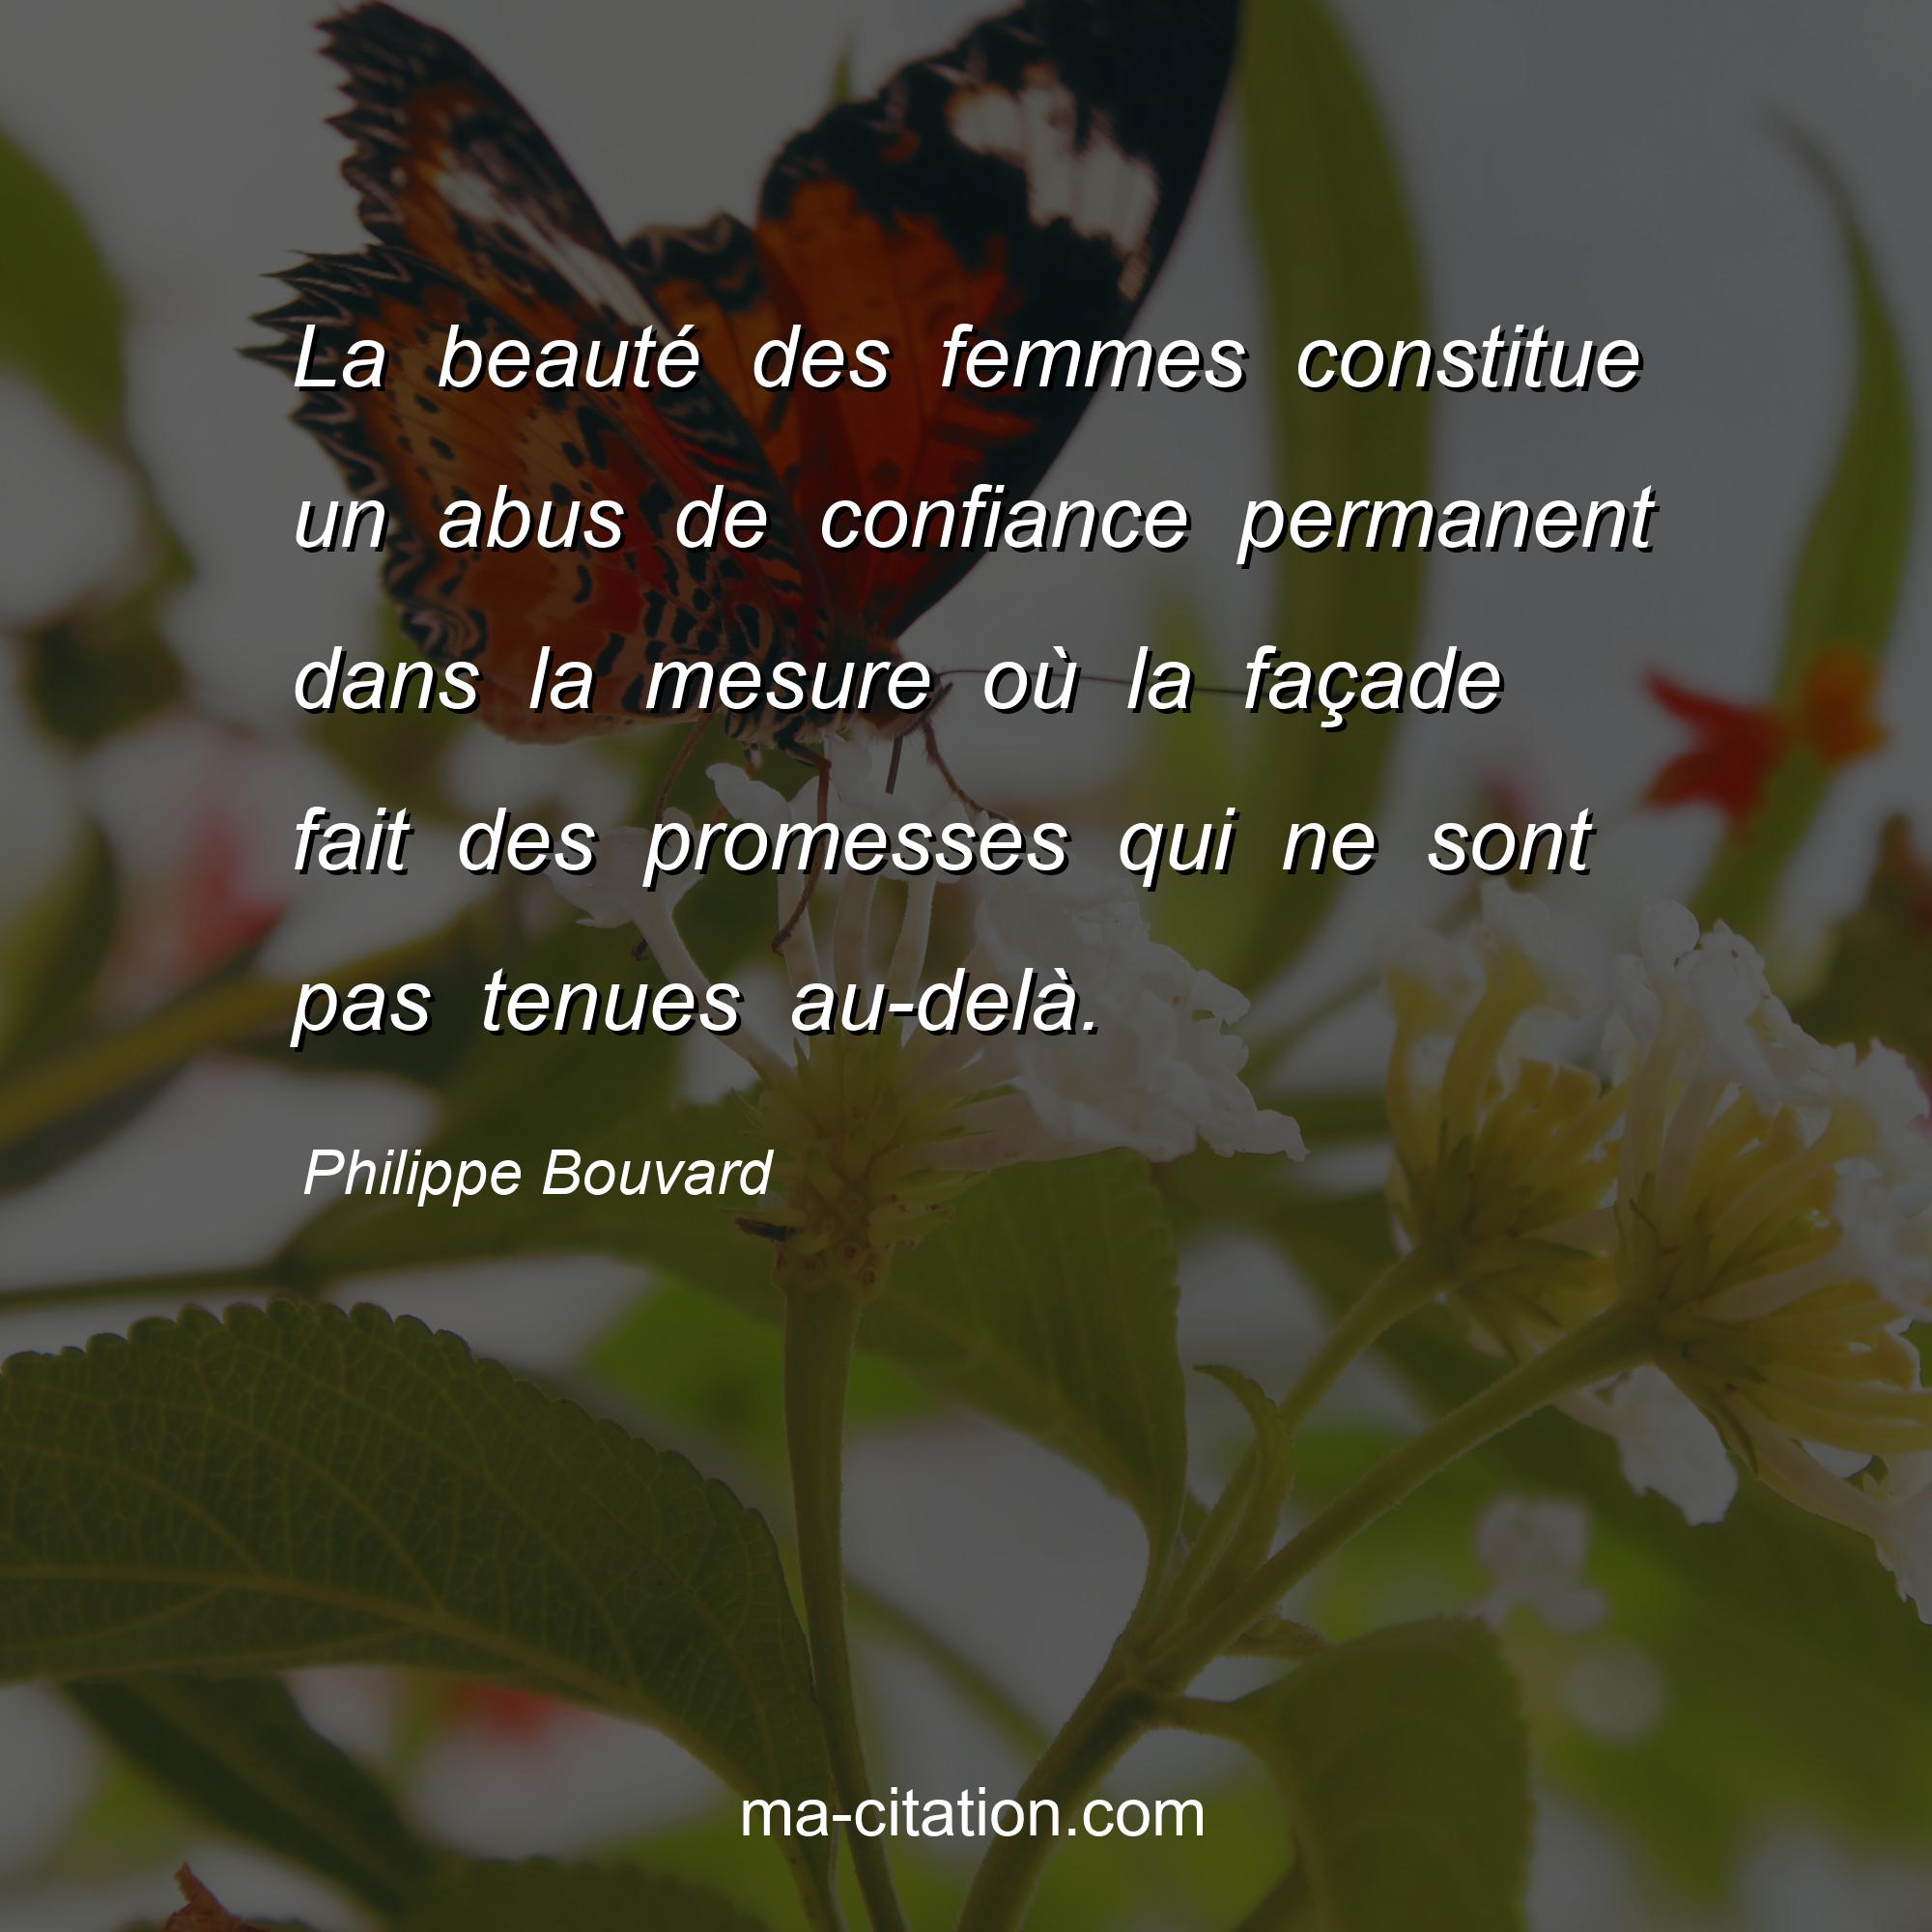 Philippe Bouvard                  
                : La beauté des femmes constitue un abus de confiance permanent dans la mesure où la façade fait des promesses qui ne sont pas tenues au-delà.